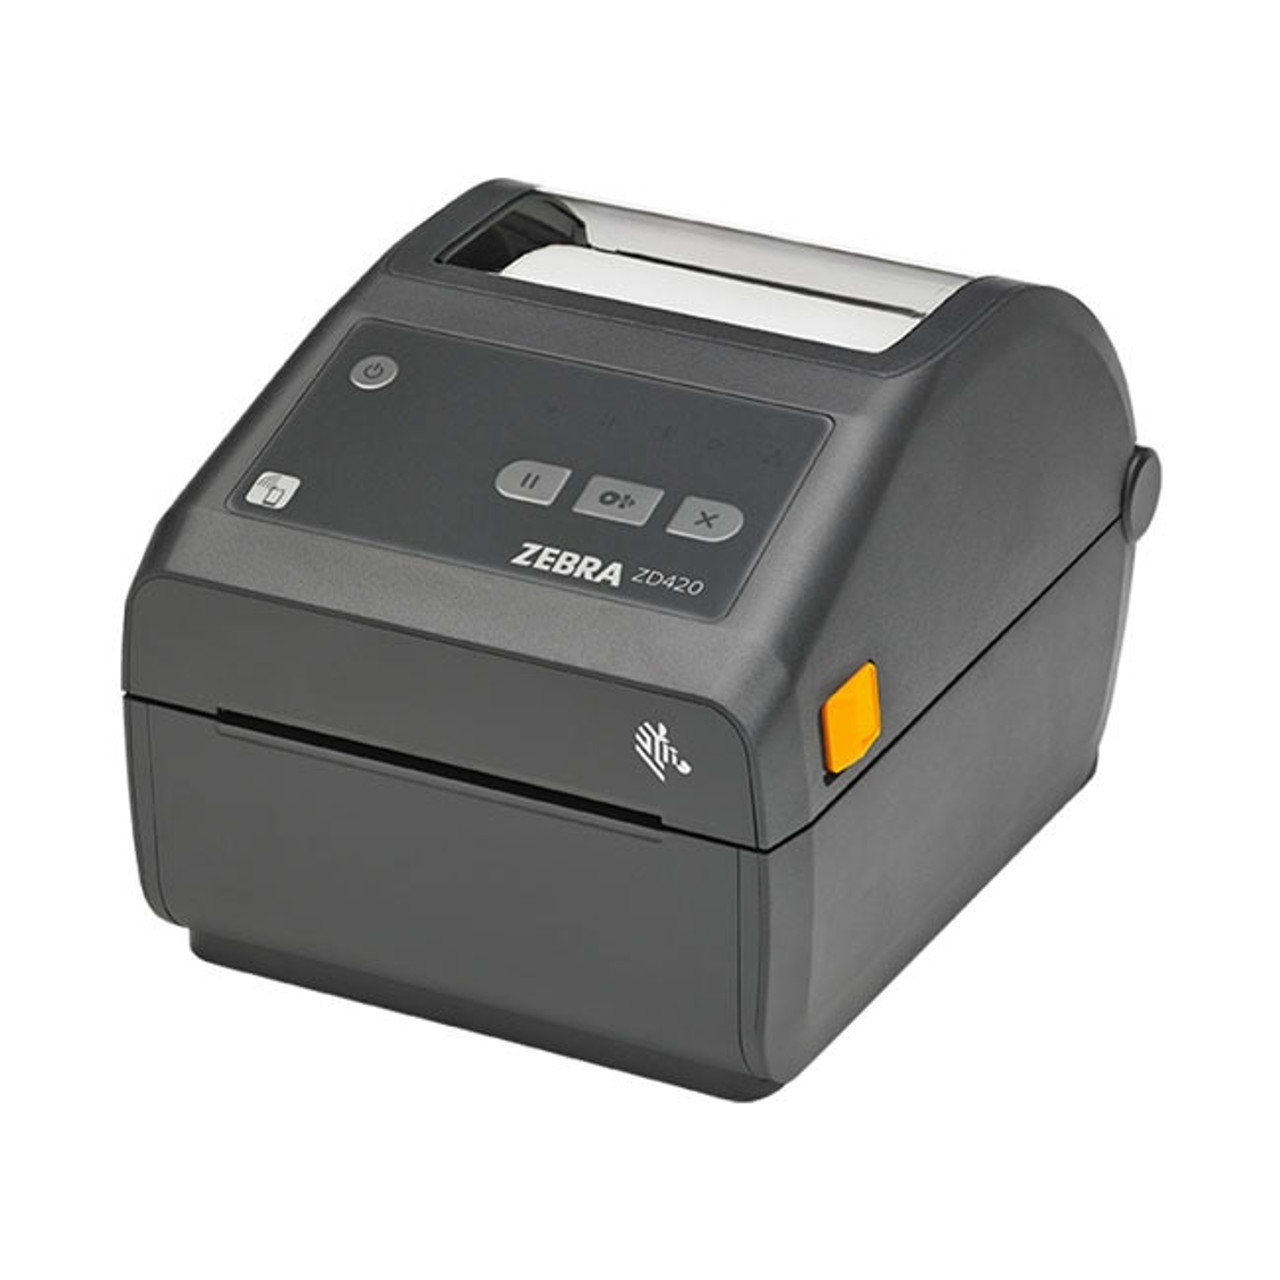 Zebra Zd420 Direct Thermal Desktop Printer Label Printers Australia 9069